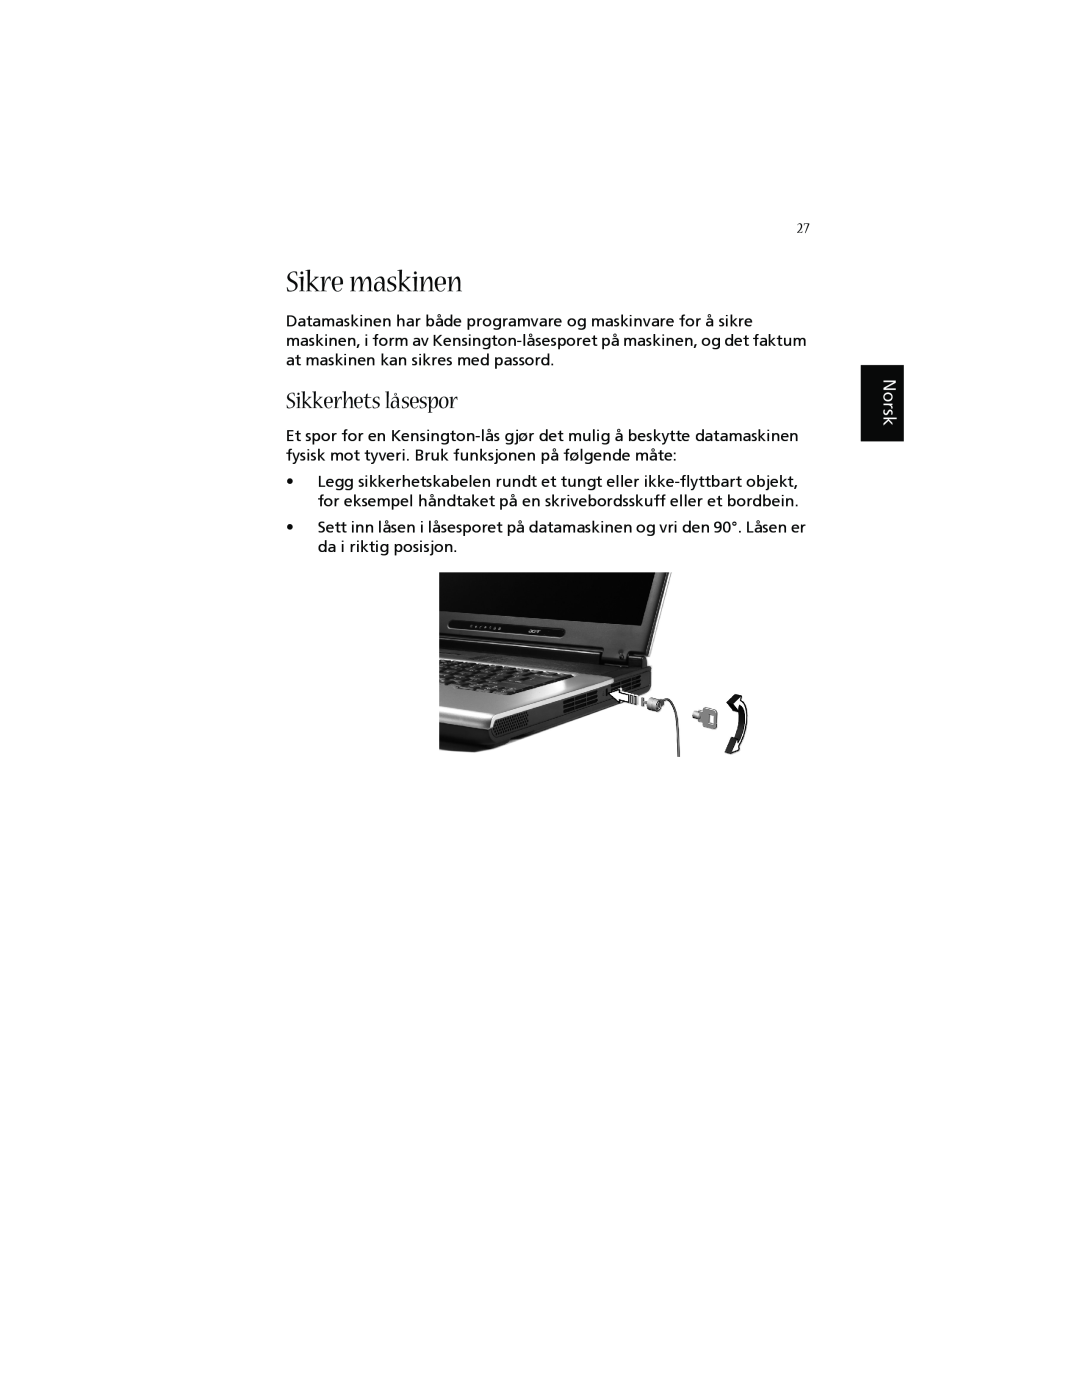 Acer 1660 manual Sikre maskinen, Sikkerhets låsespor, Norsk 